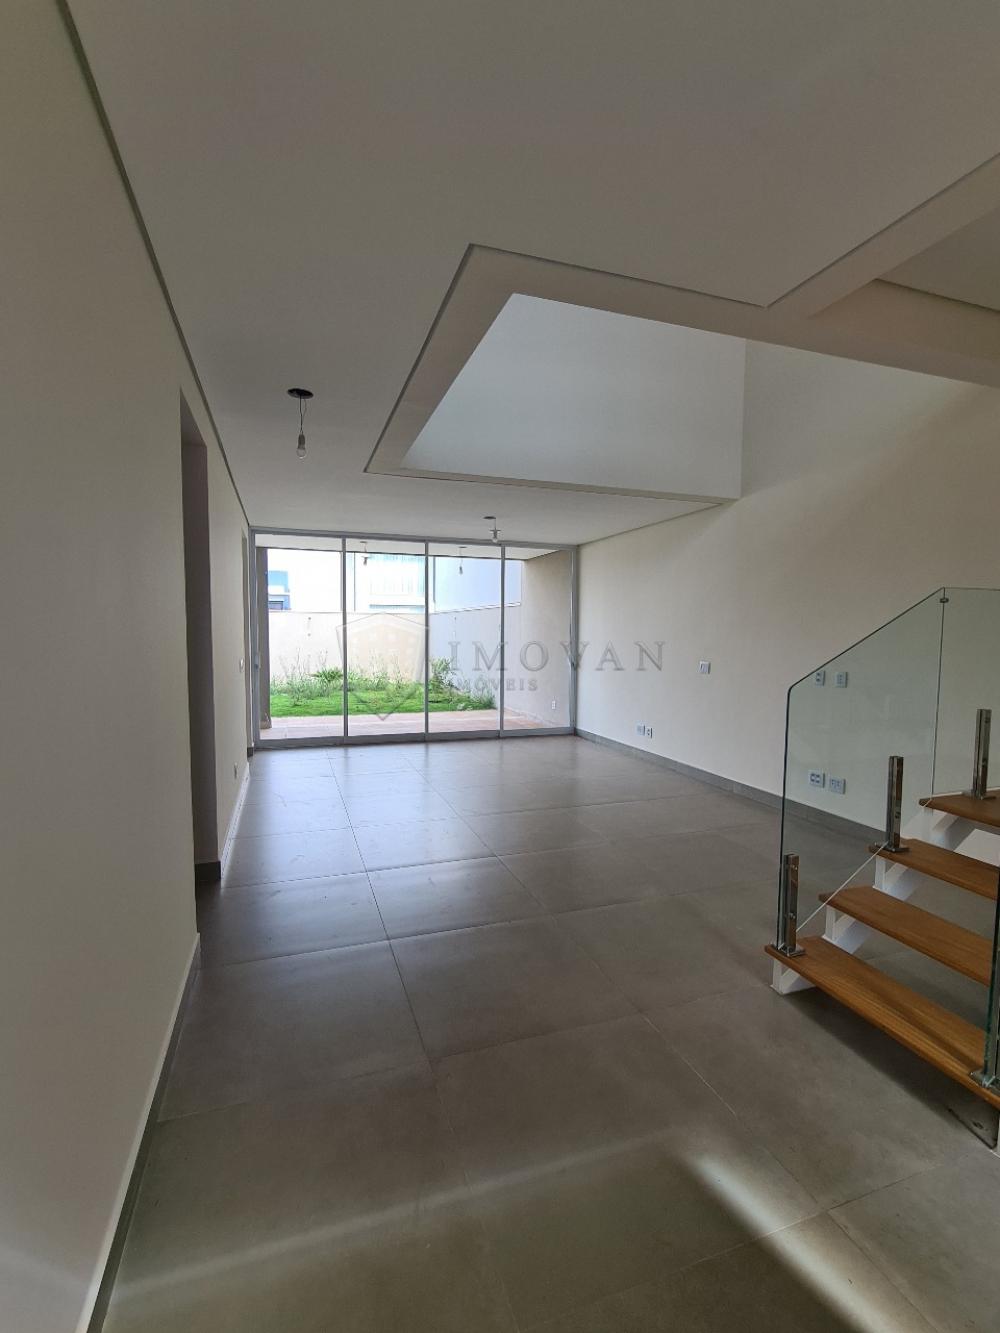 Comprar Casa / Condomínio em Bonfim Paulista R$ 900.000,00 - Foto 4